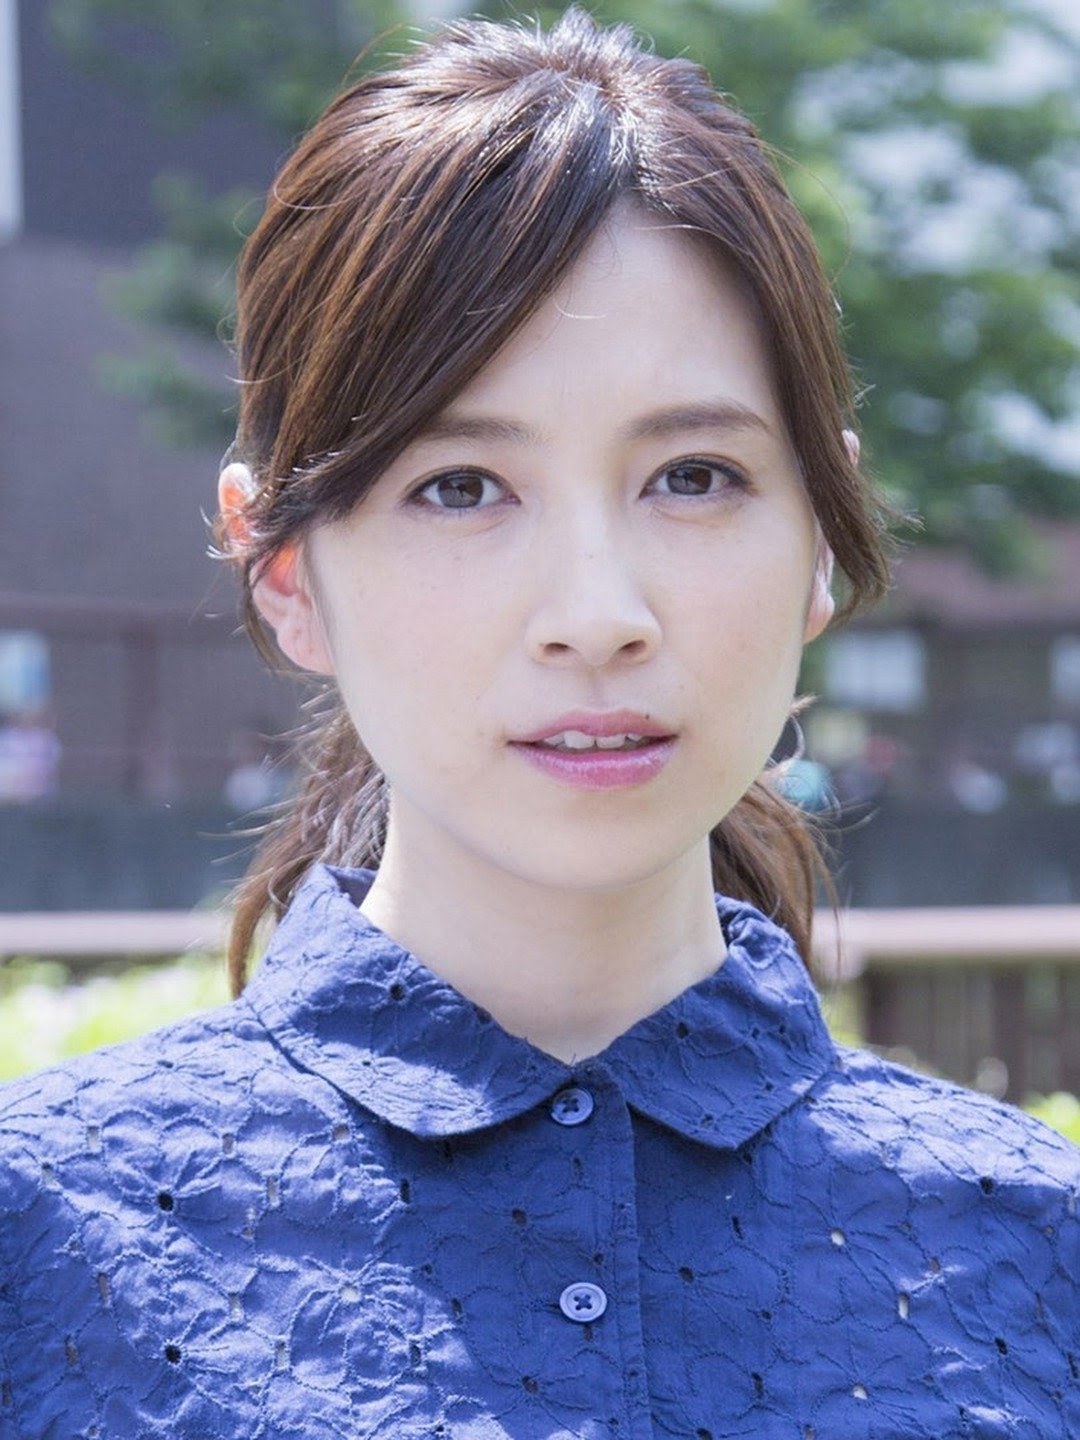 Ayumi Oka Japanese Actress